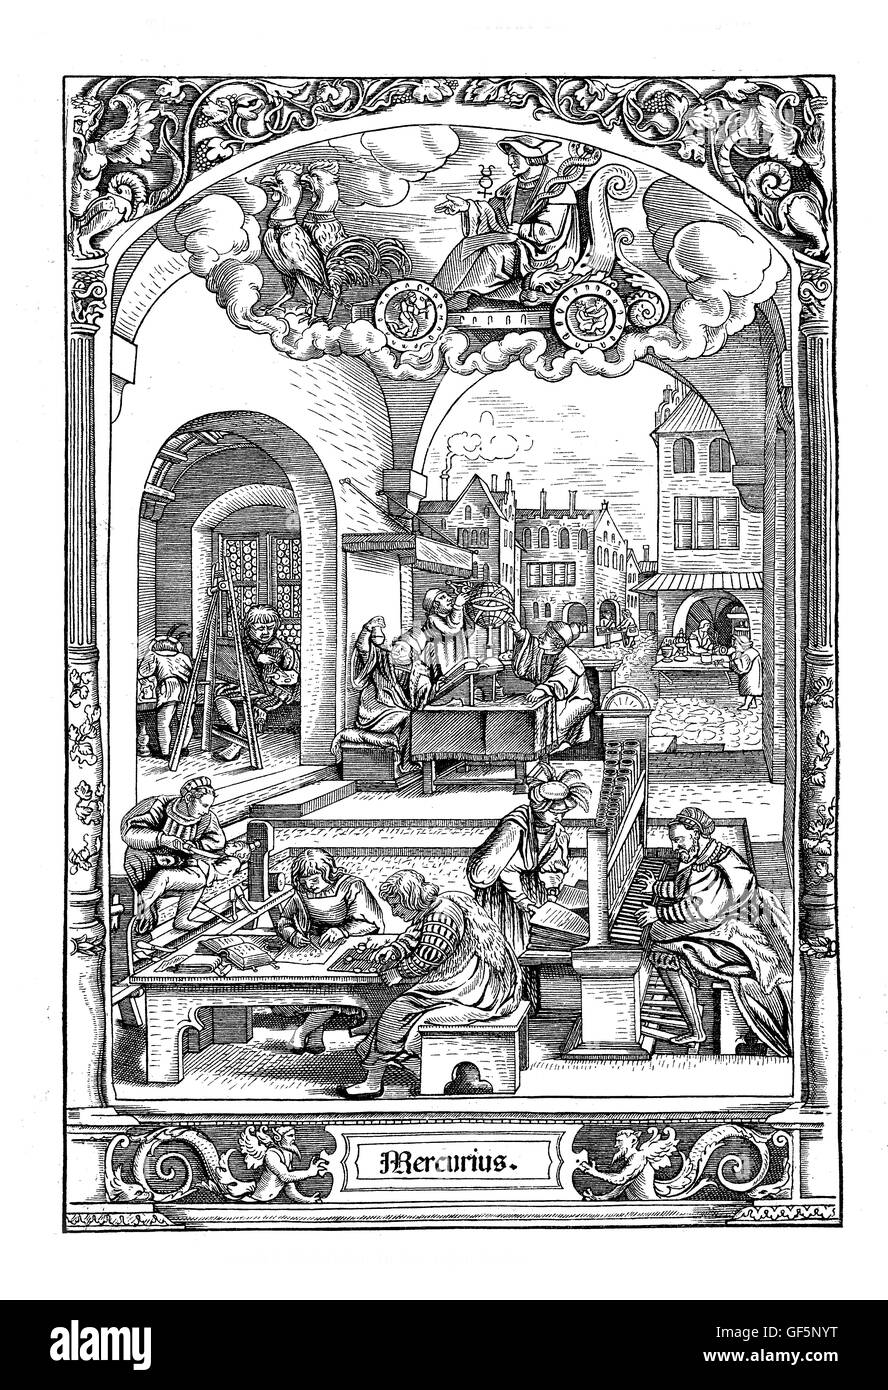 Gravure sur bois par Hans Sebald Beham (1500-1550), de 'La successions de la semaine' : sous le signe de mercure astrologic une série de scènes de la vie urbaine en ces jours (mercredi). Bien que l'homicide était tout sauf inconnu en ces temps-là, l'homme avec le couteau sur la gauche est un médecin, pas un tueur professionnel. Banque D'Images